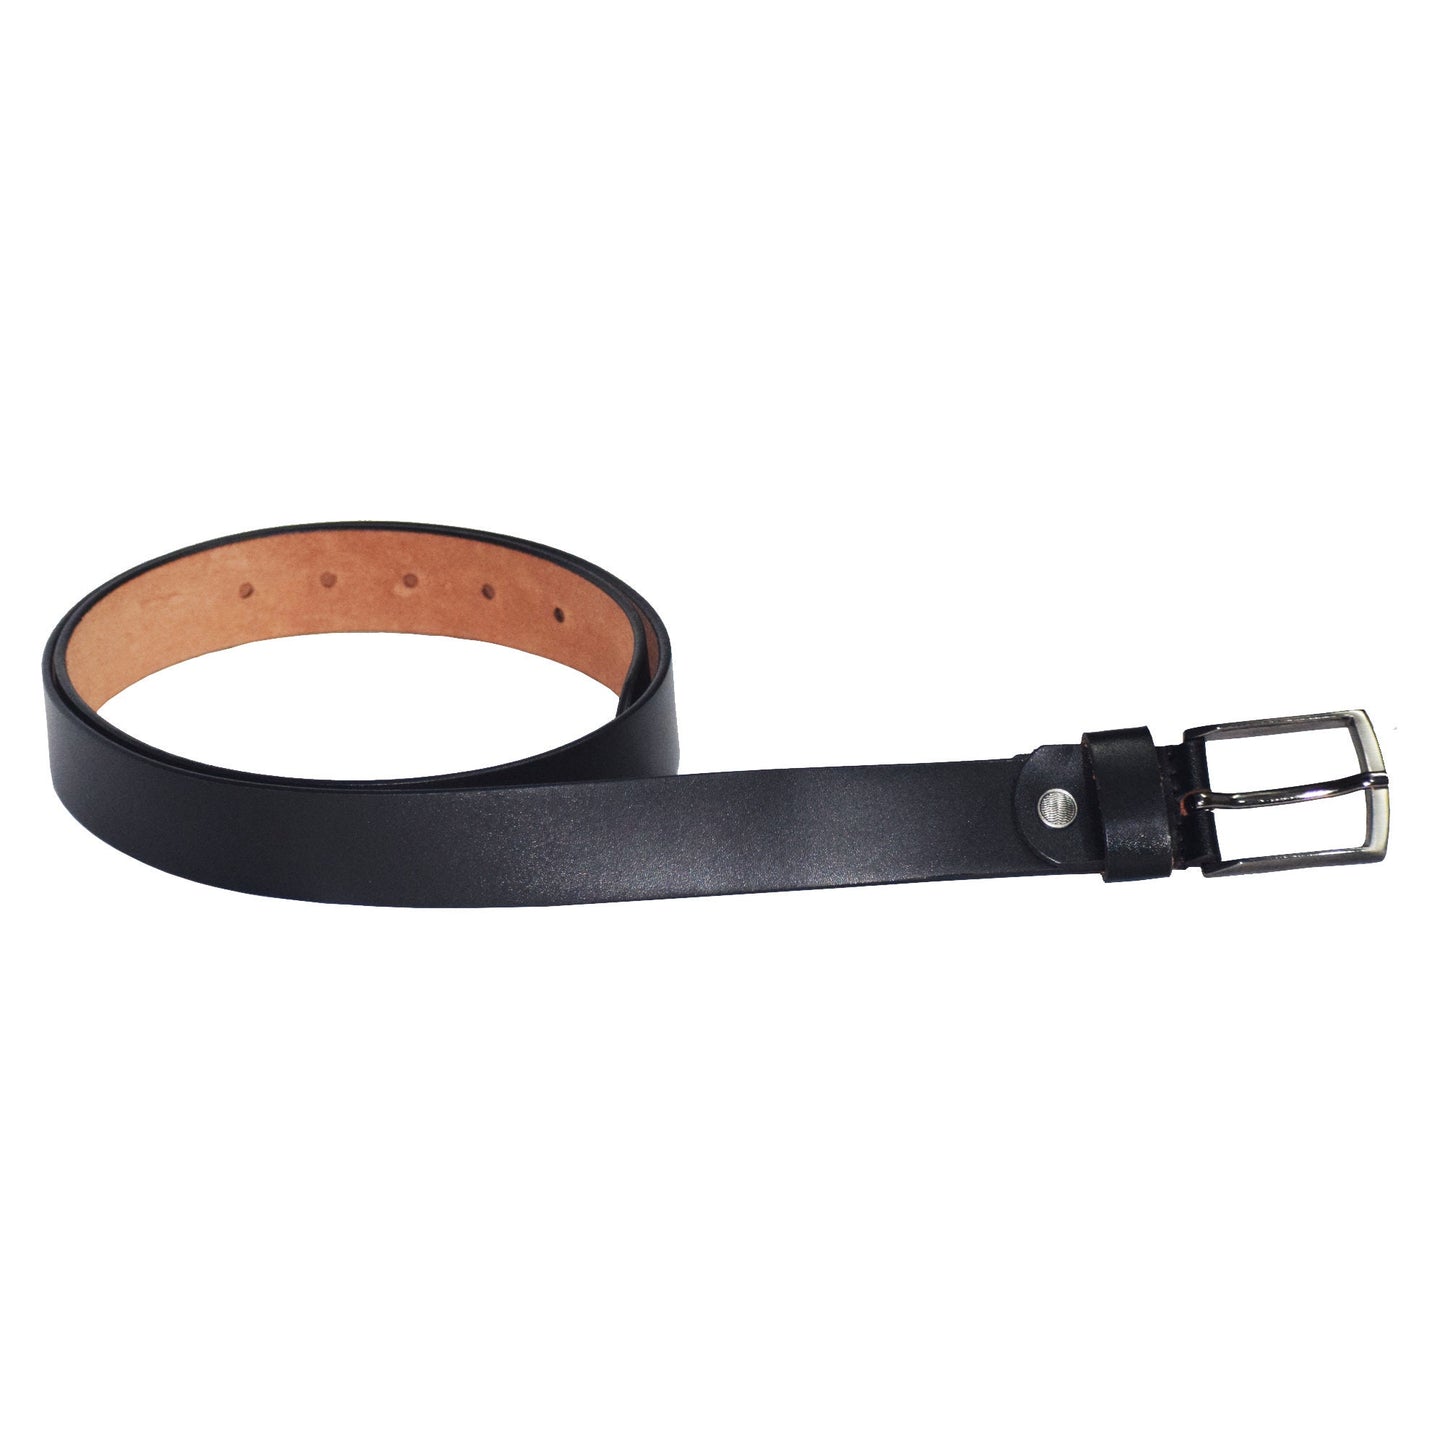 Full Grain Genuine Leather Belt For Mens Black Leather Belt Mens Leather Belt Womens Leather Belt Leather Waist Belt Gift For Him